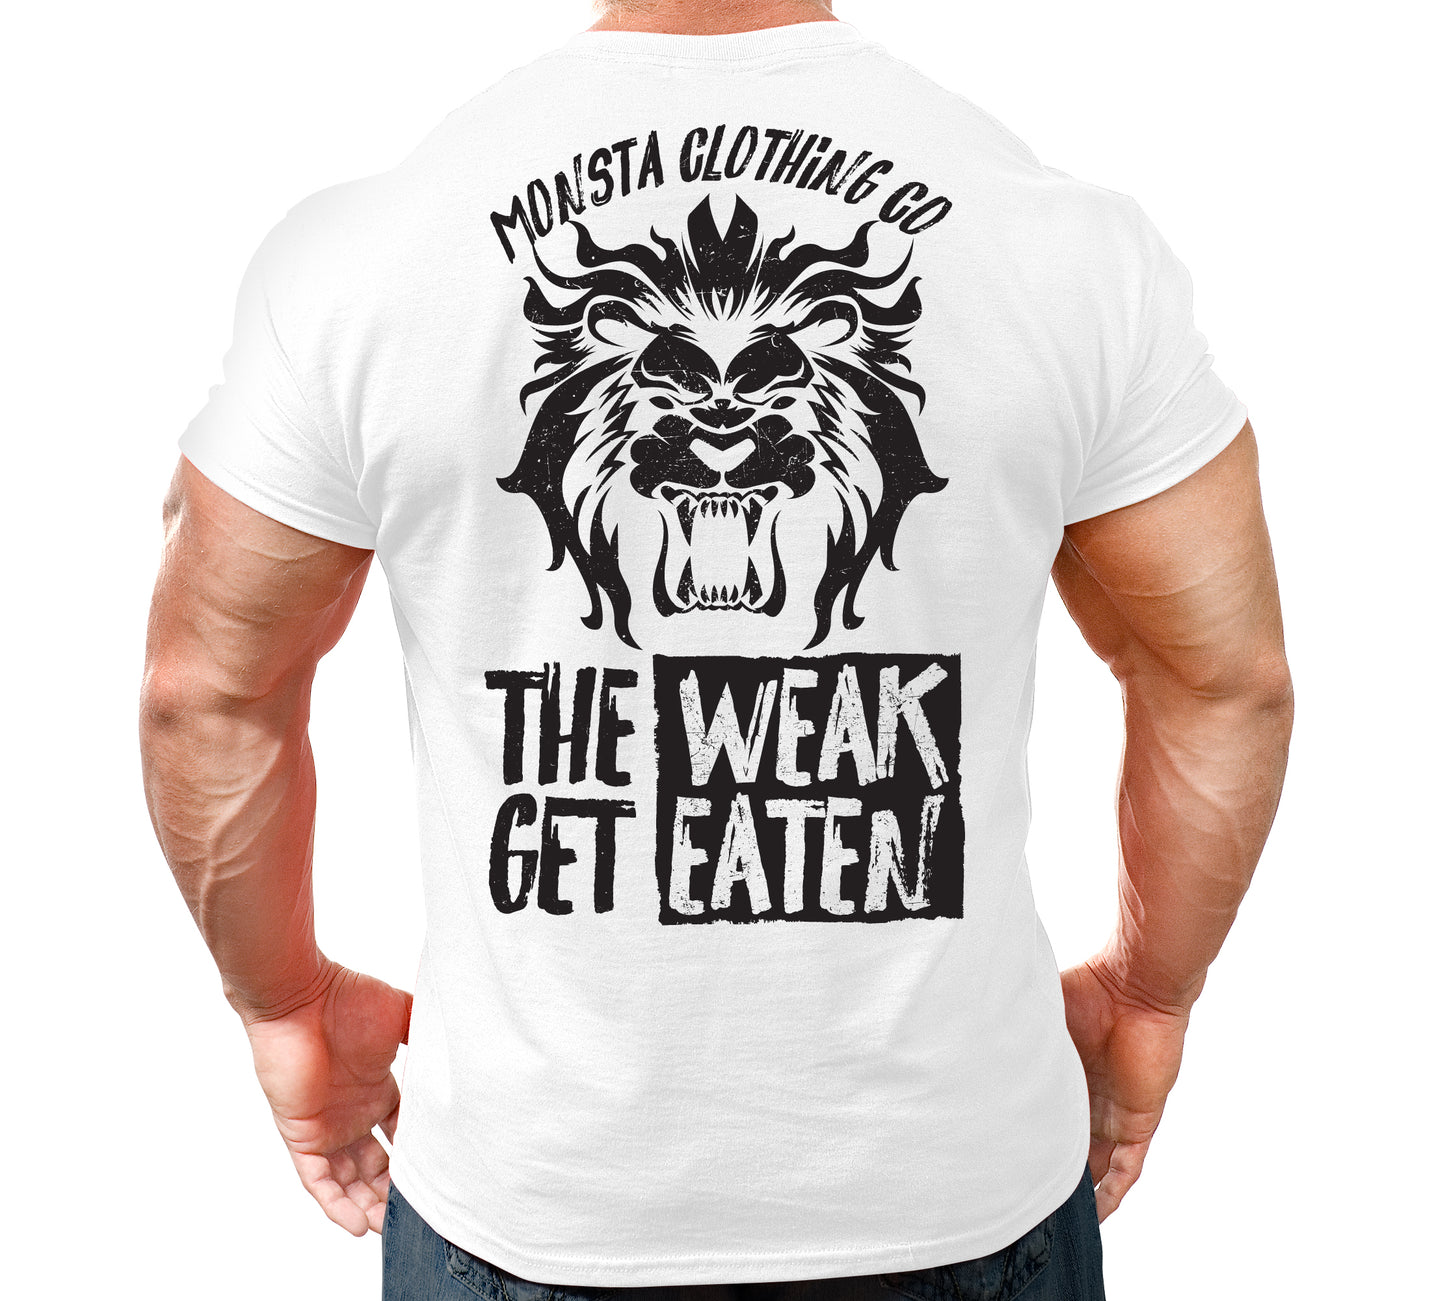 Weak get Eaten - 365